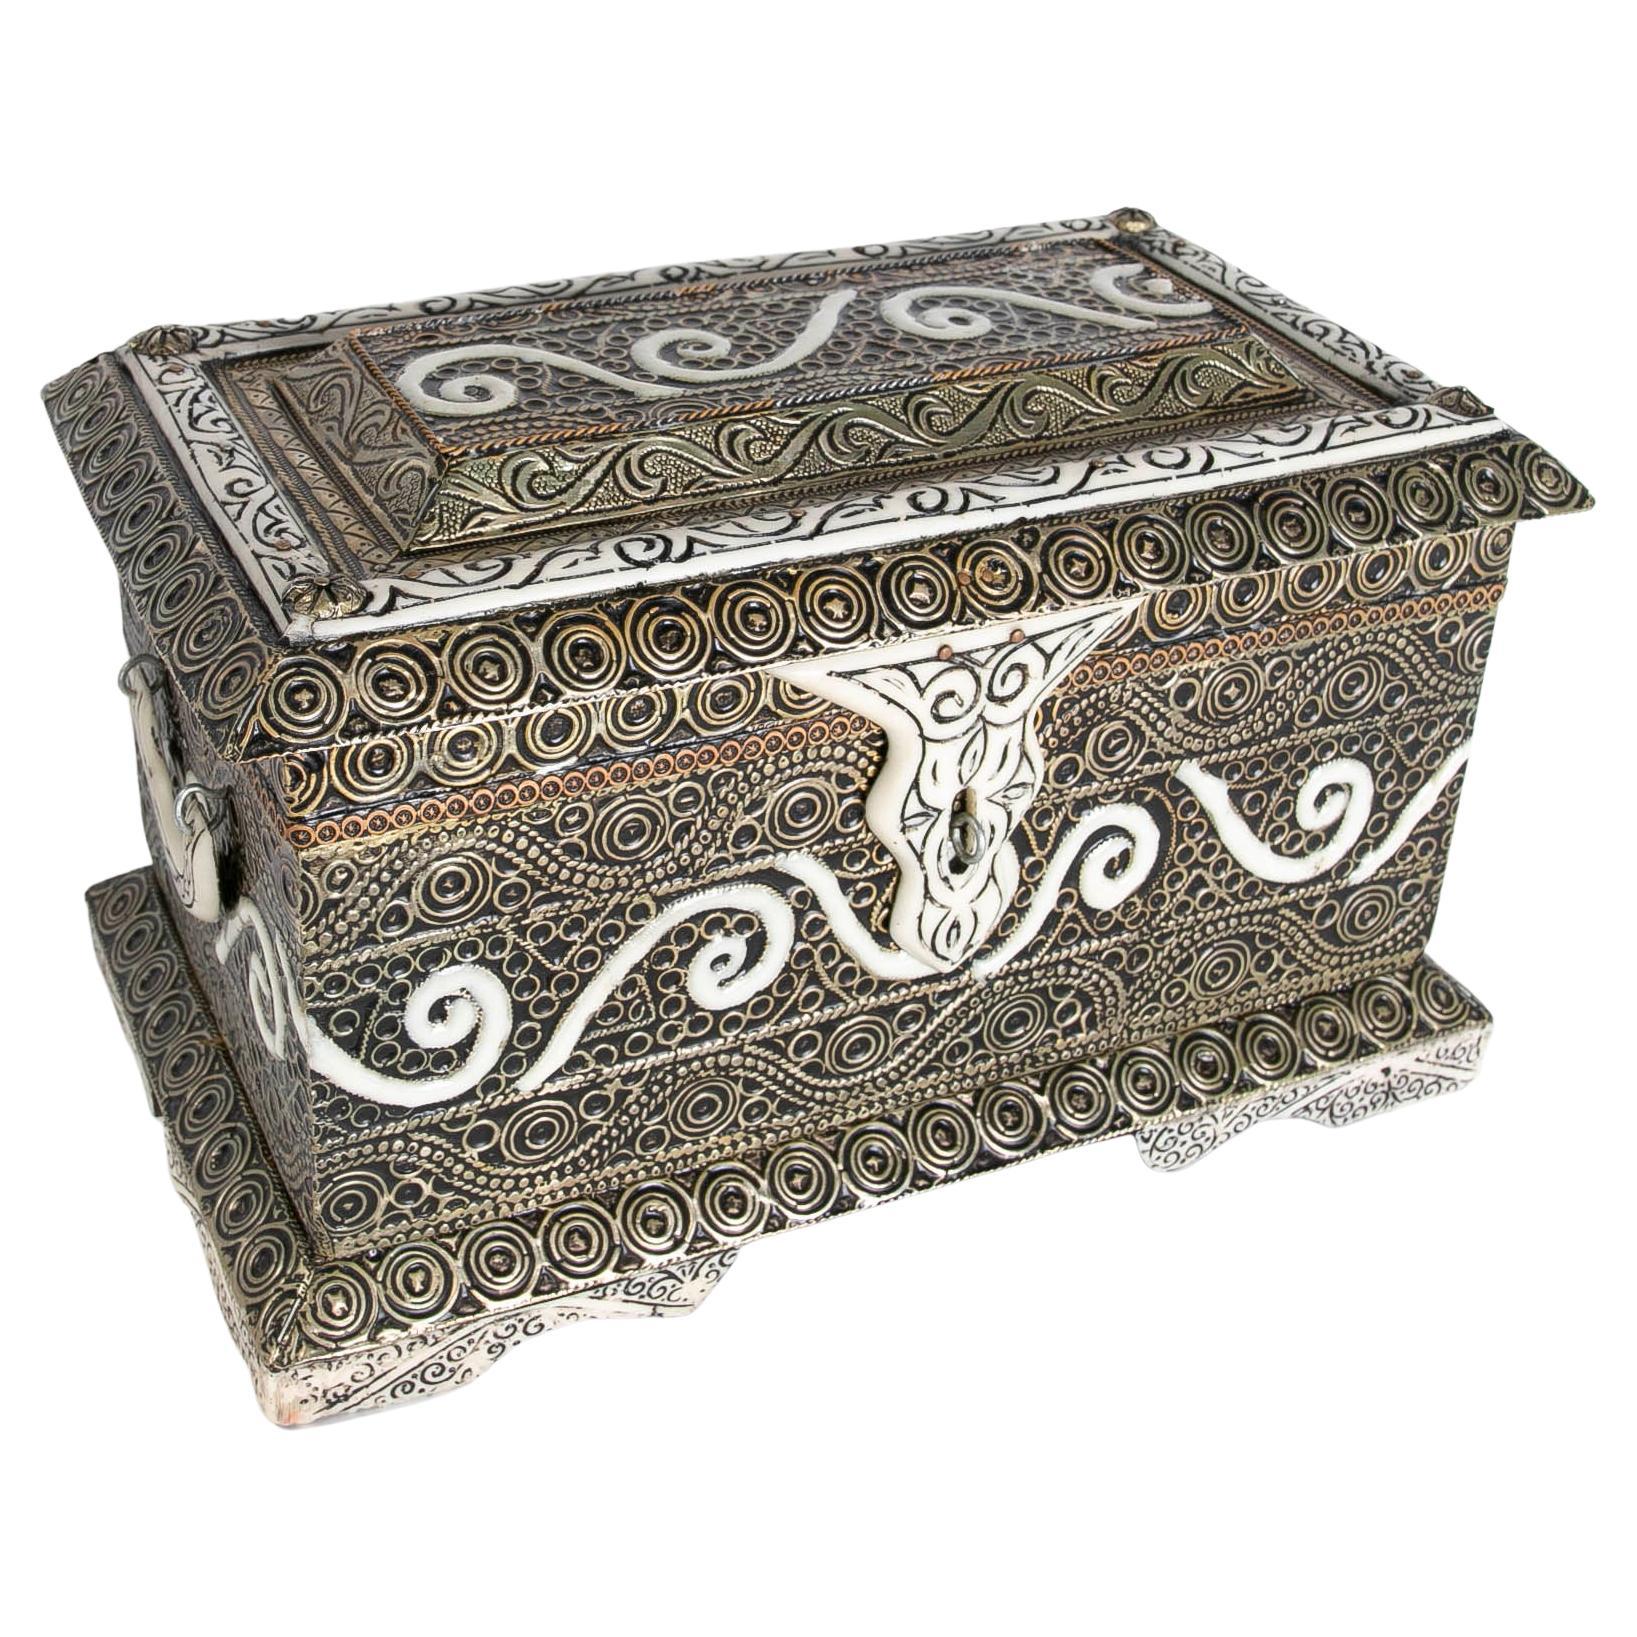 Rectangular Decorative Box with Lid and Circular Motifs